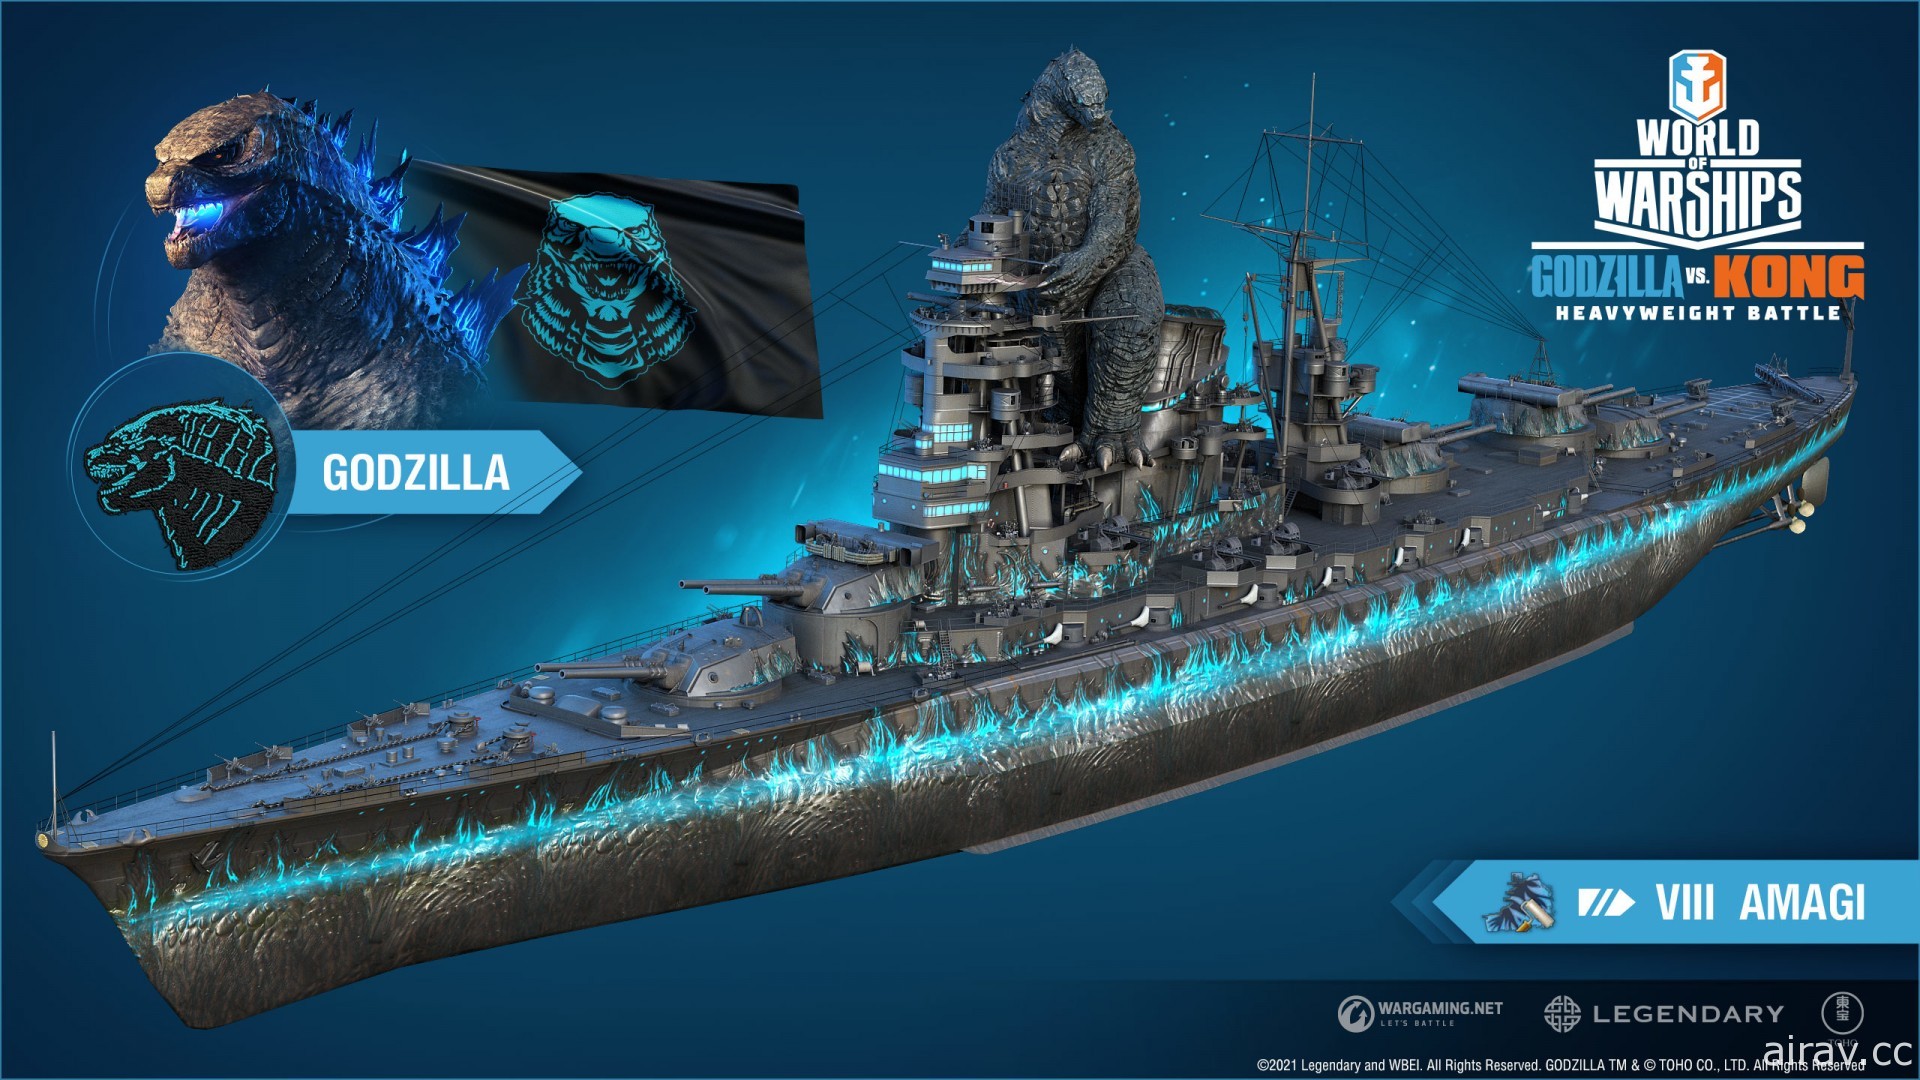 《哥吉拉大战金刚》将降临《战舰世界》延续怪兽王座海上争霸战